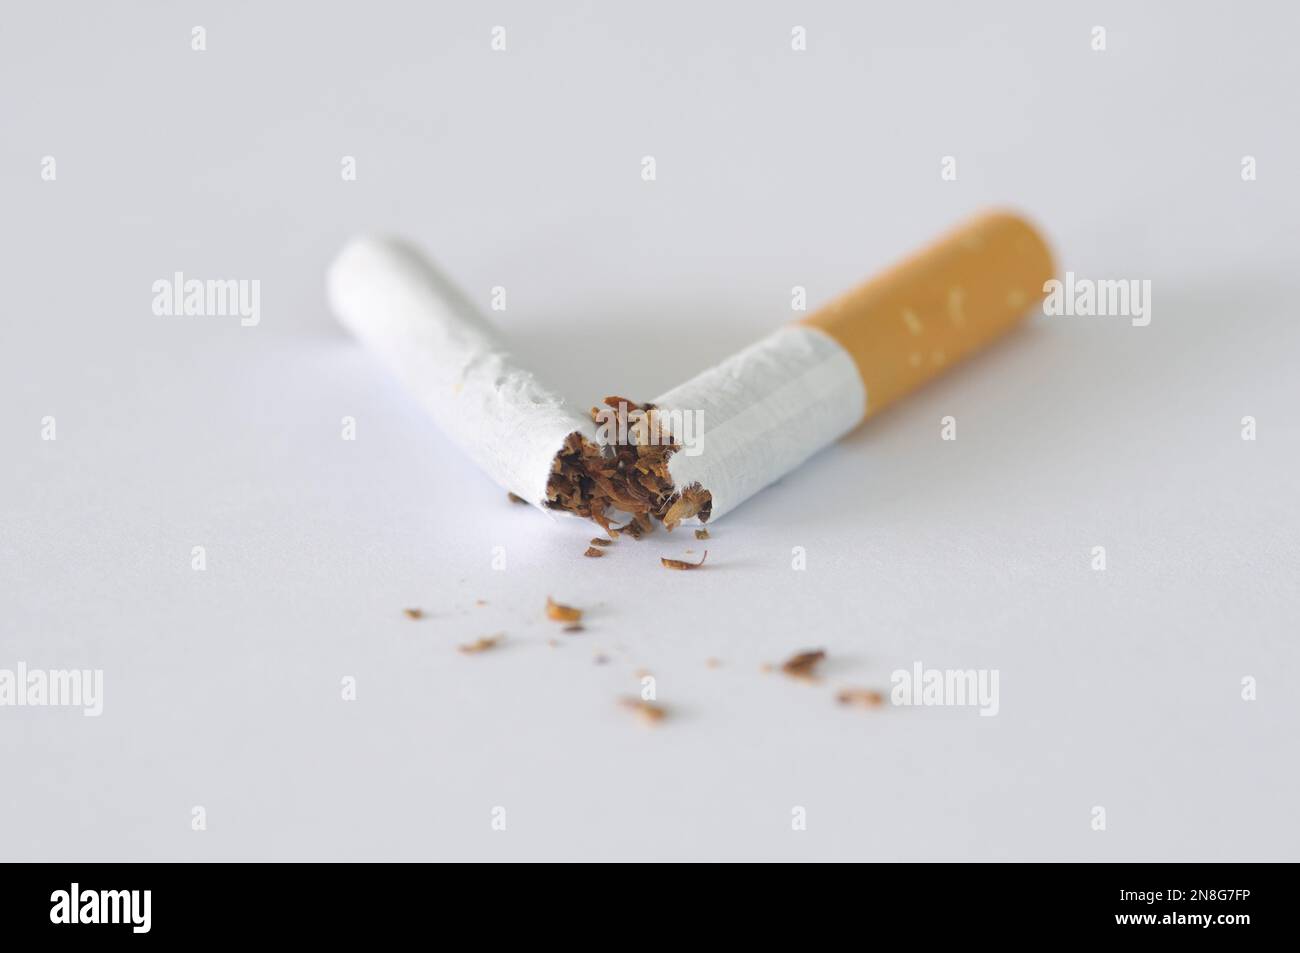 Primo piano di una sigaretta spezzata a metà su sfondo bianco. Concetti: Smettere di fumare, smettere di fumare, smettere di fumare, dipendenza da fumo, cattive abitudini Foto Stock